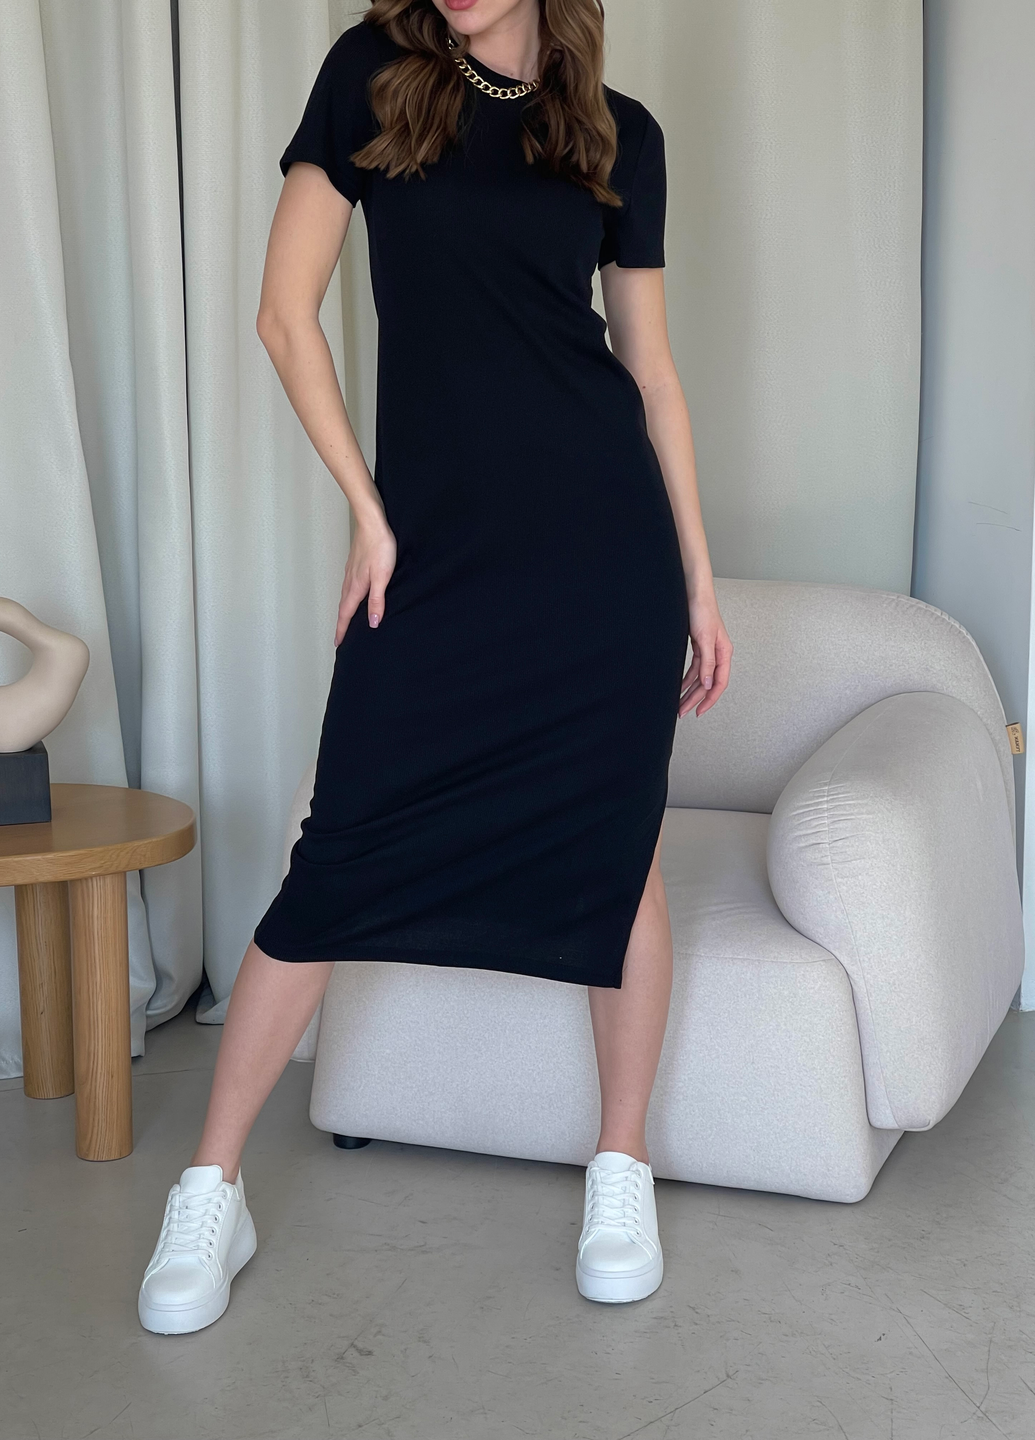 Купить Длинное платье-футболка в рубчик черное Merlini Кассо 700000121 размер 42-44 (S-M) в интернет-магазине